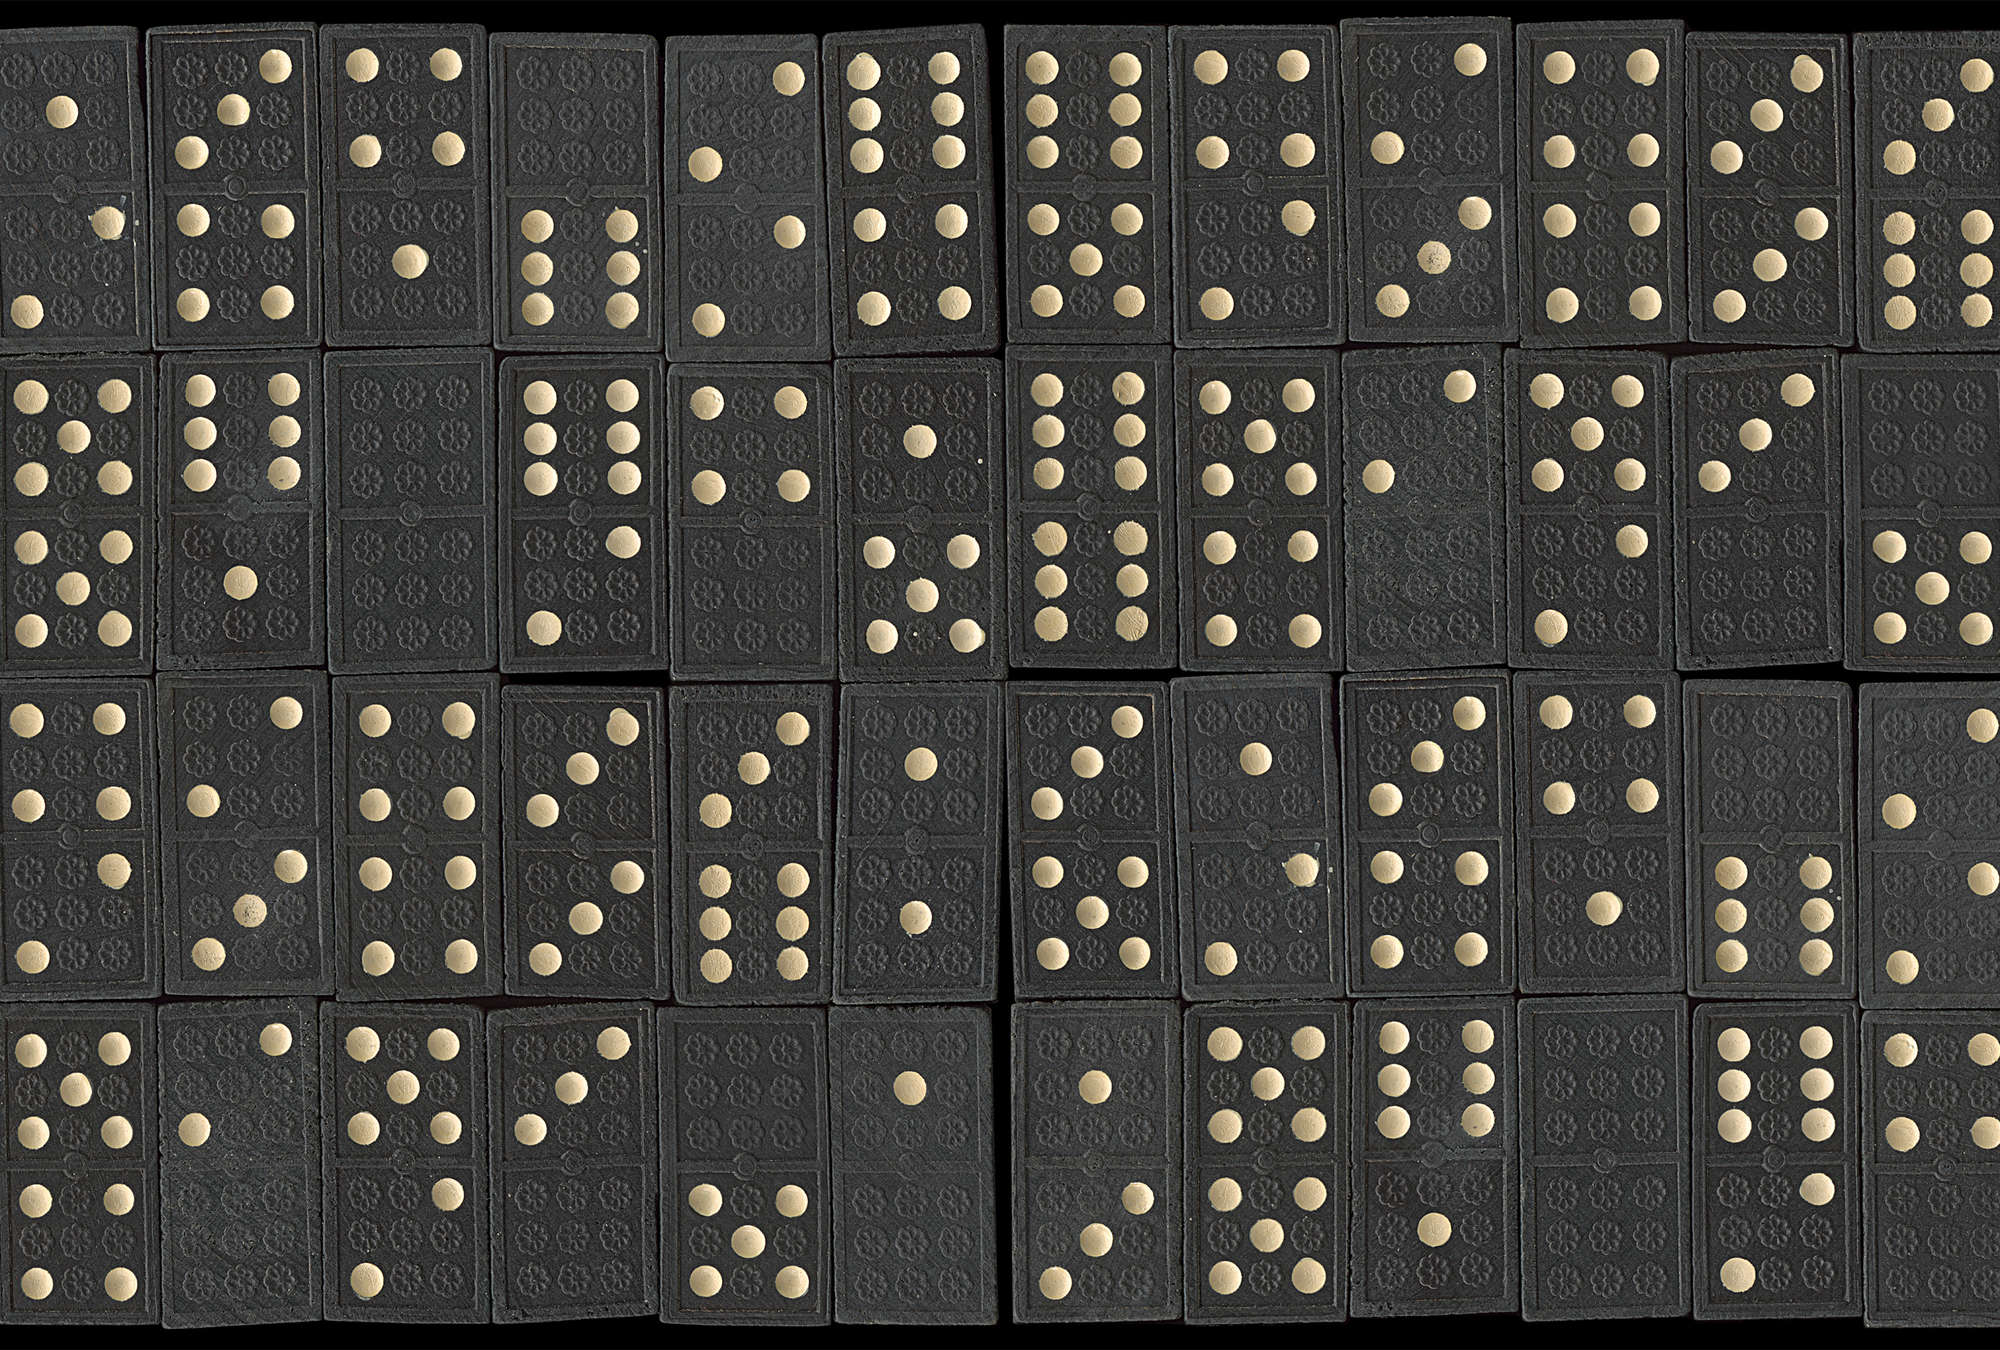             Papier peint Dominos Retro Motif de jeu de société
        